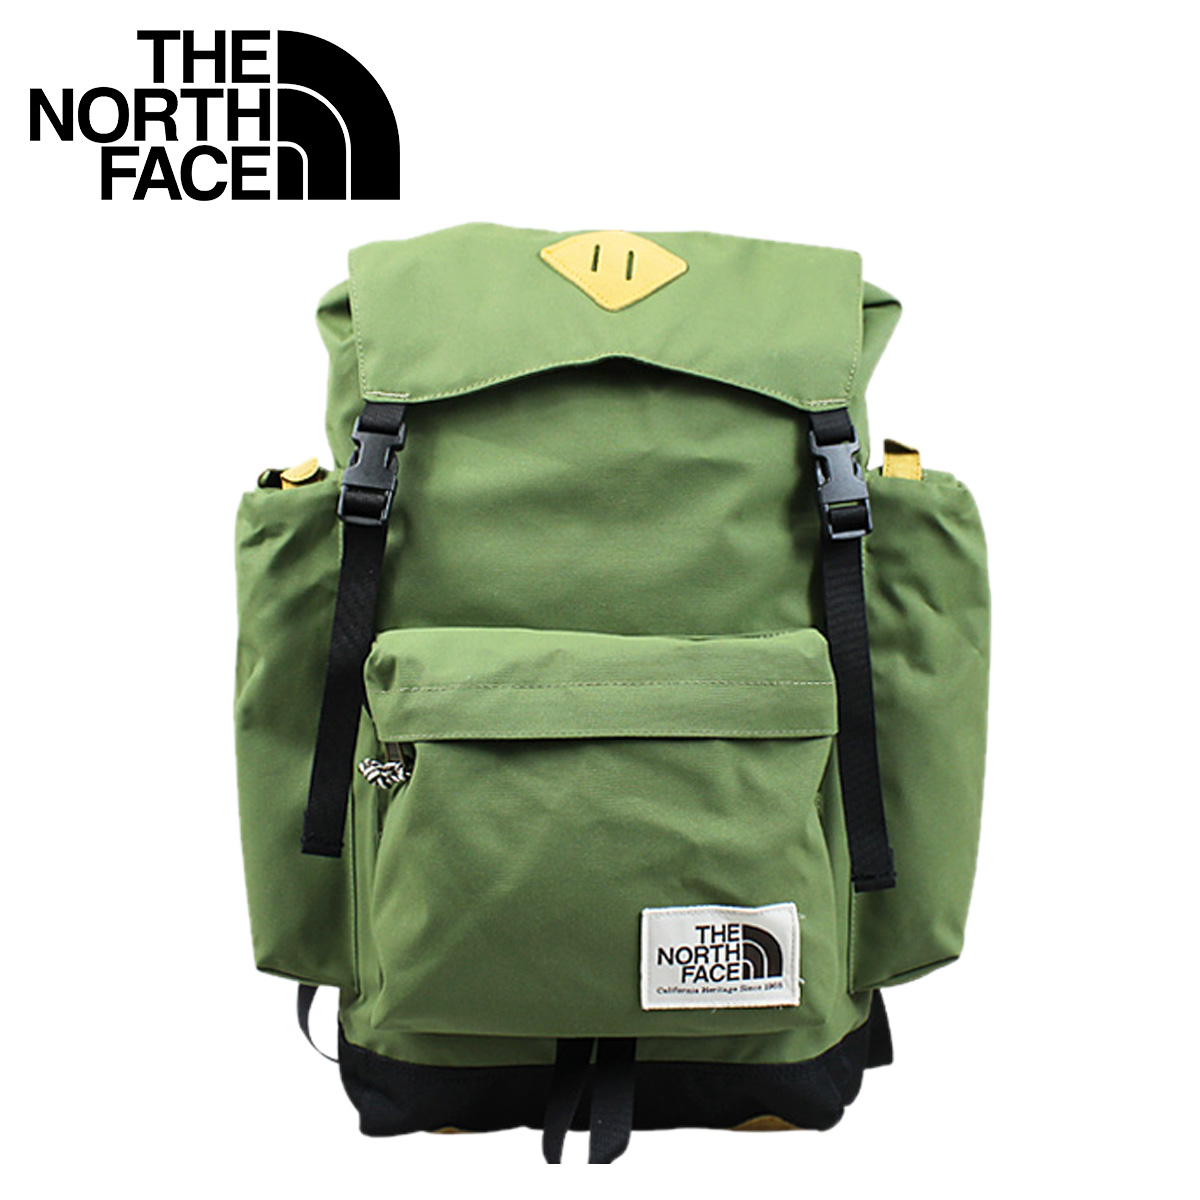 SNEAK ONLINE SHOP: North Face THE NORTH FACE backpack rucksack 20 liters C084 olive black ...